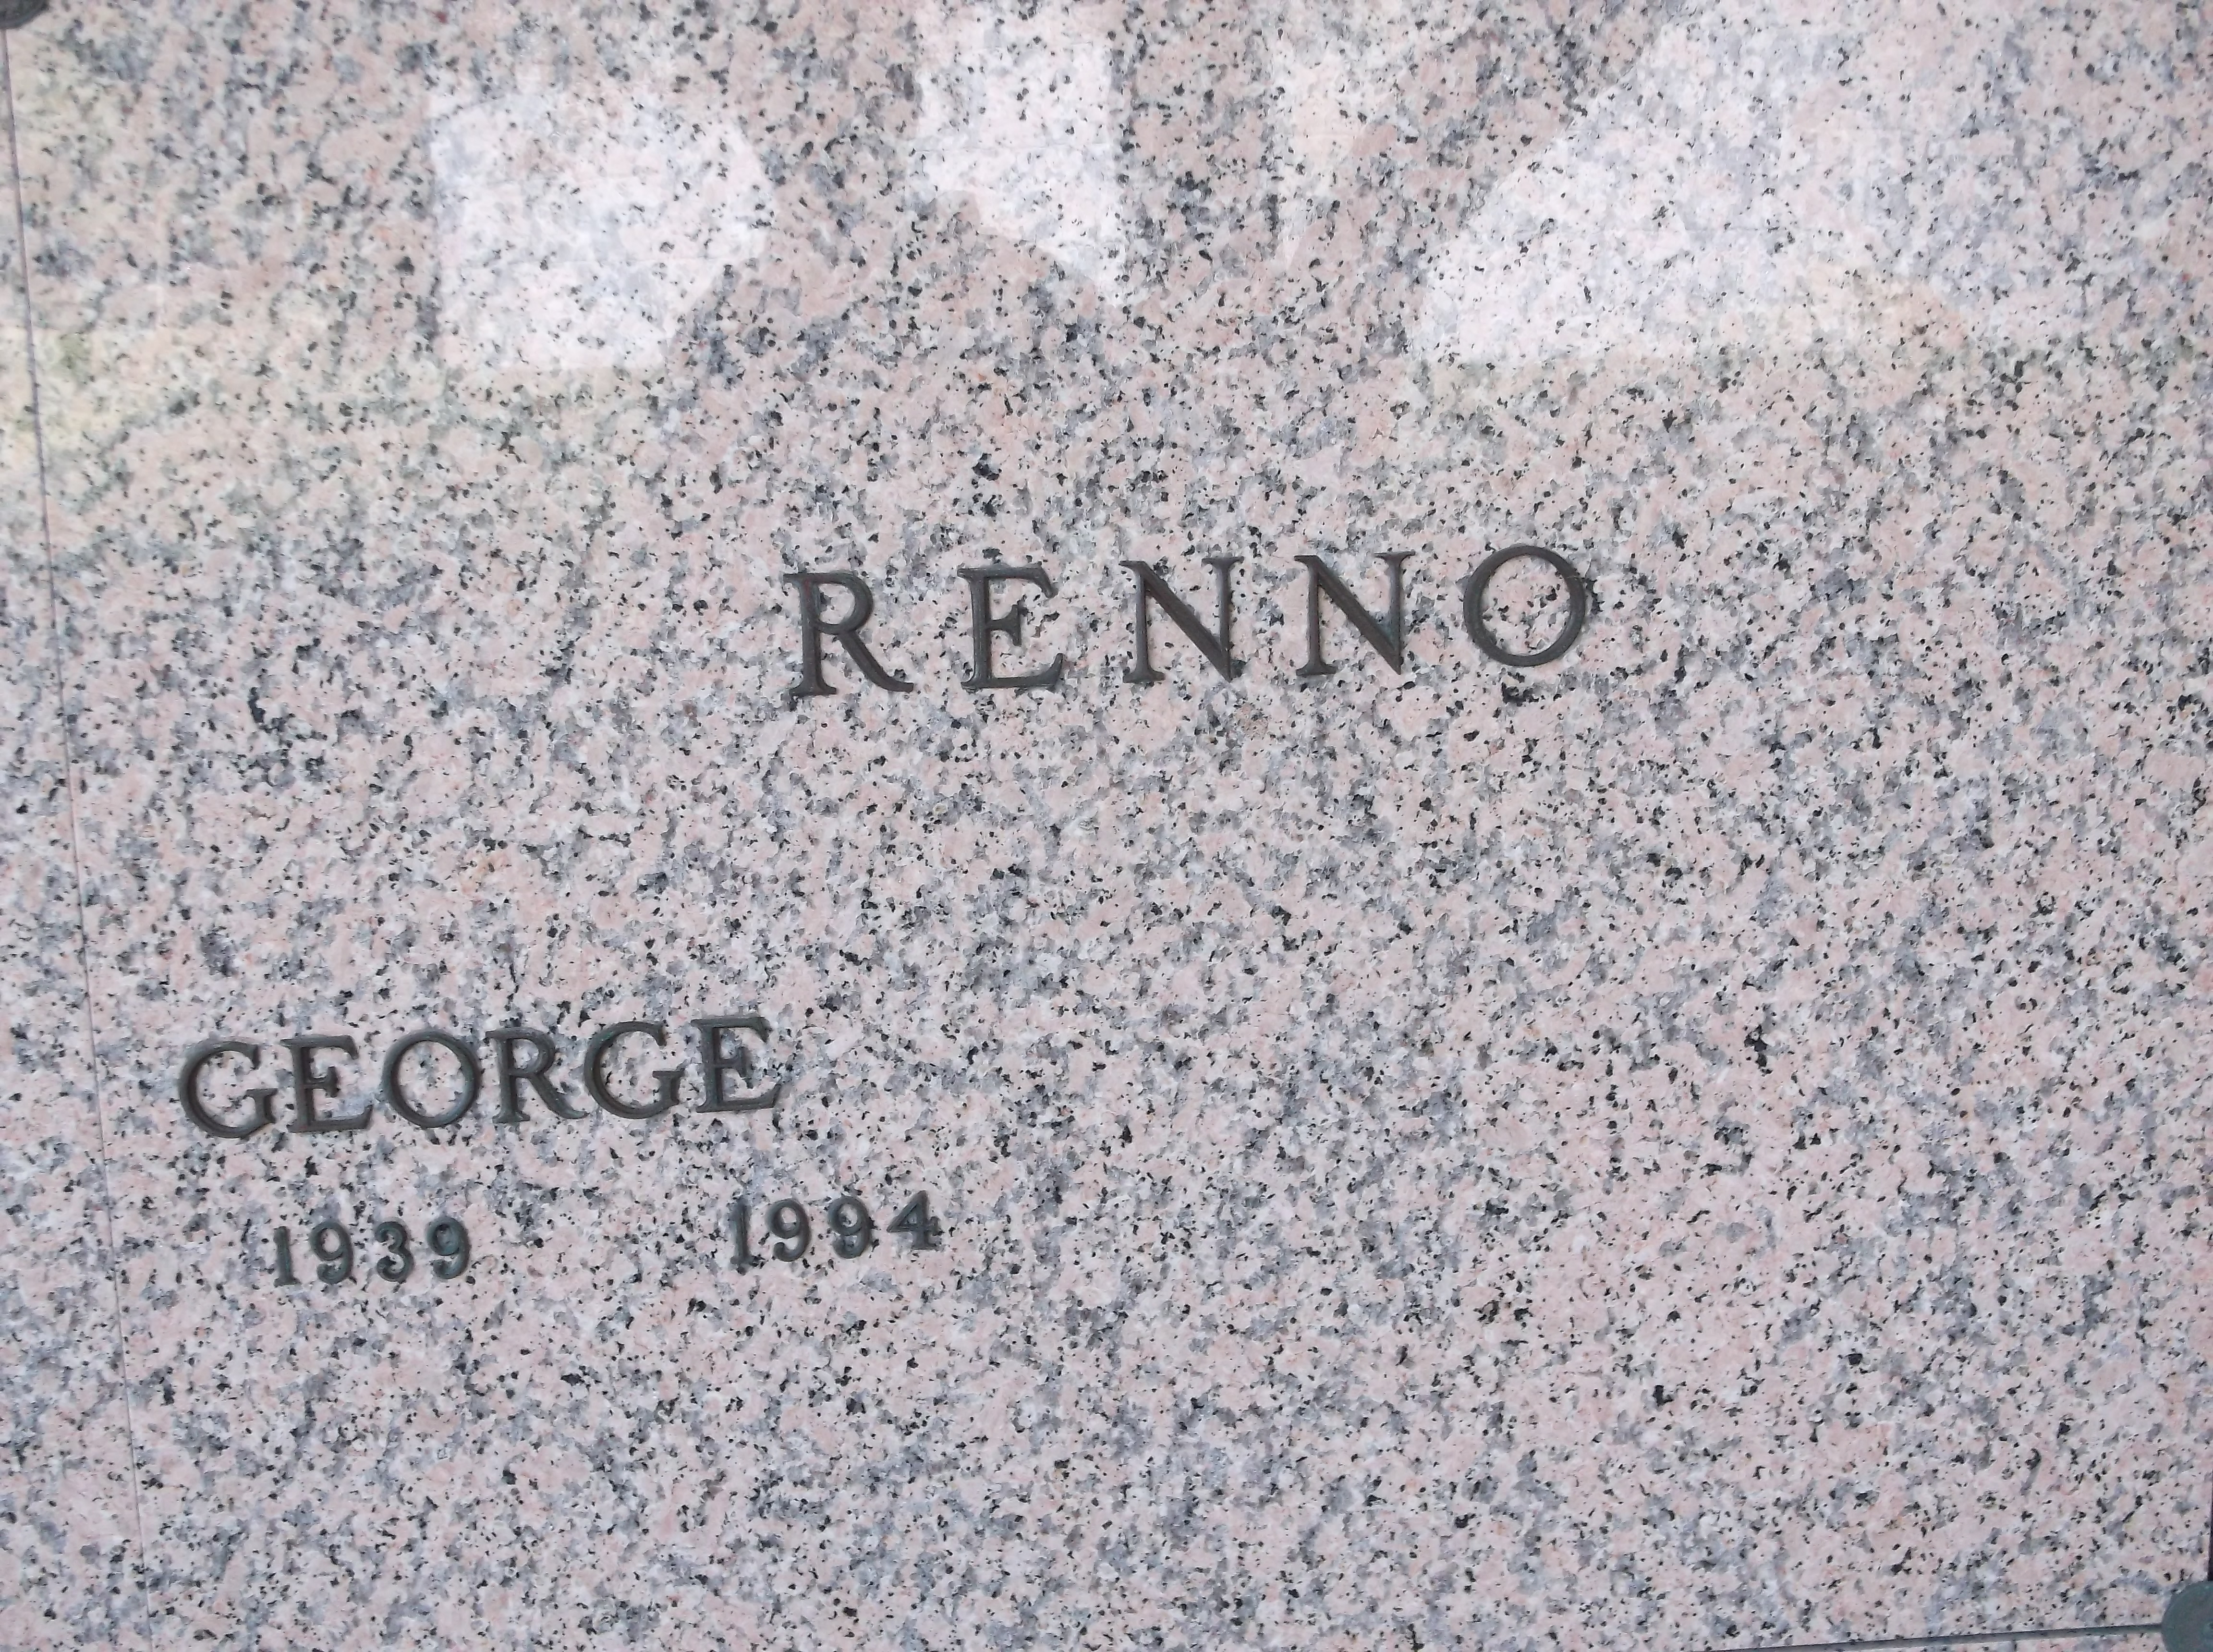 George Renno